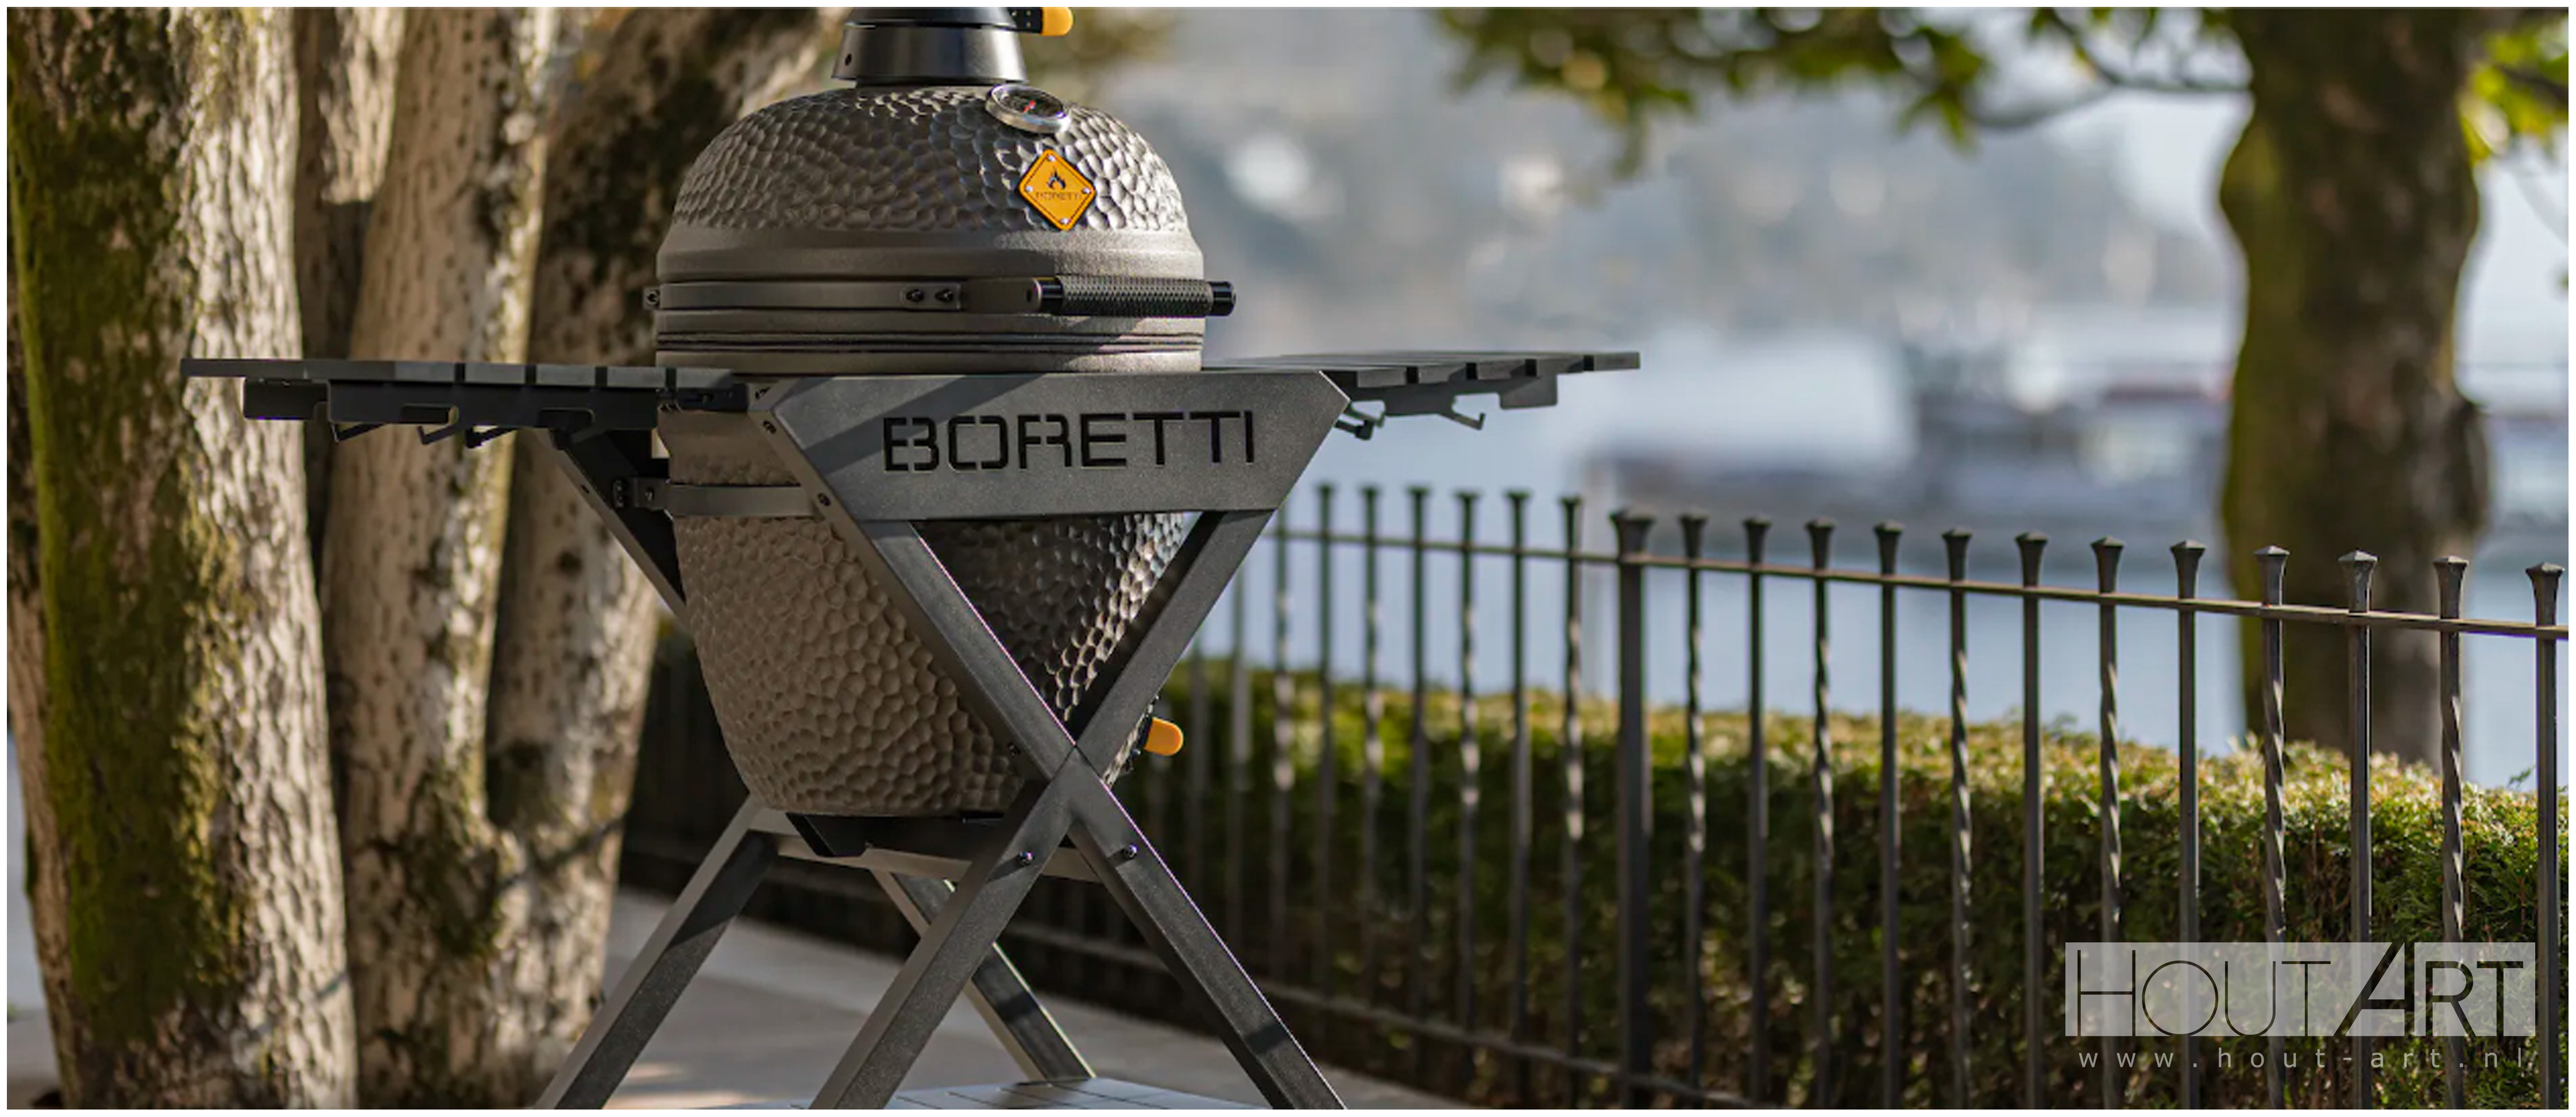 Voorwaardelijk Het koud krijgen Bovenstaande Boretti BBQs: BBQ / Egg Boretti Ceramica Medium